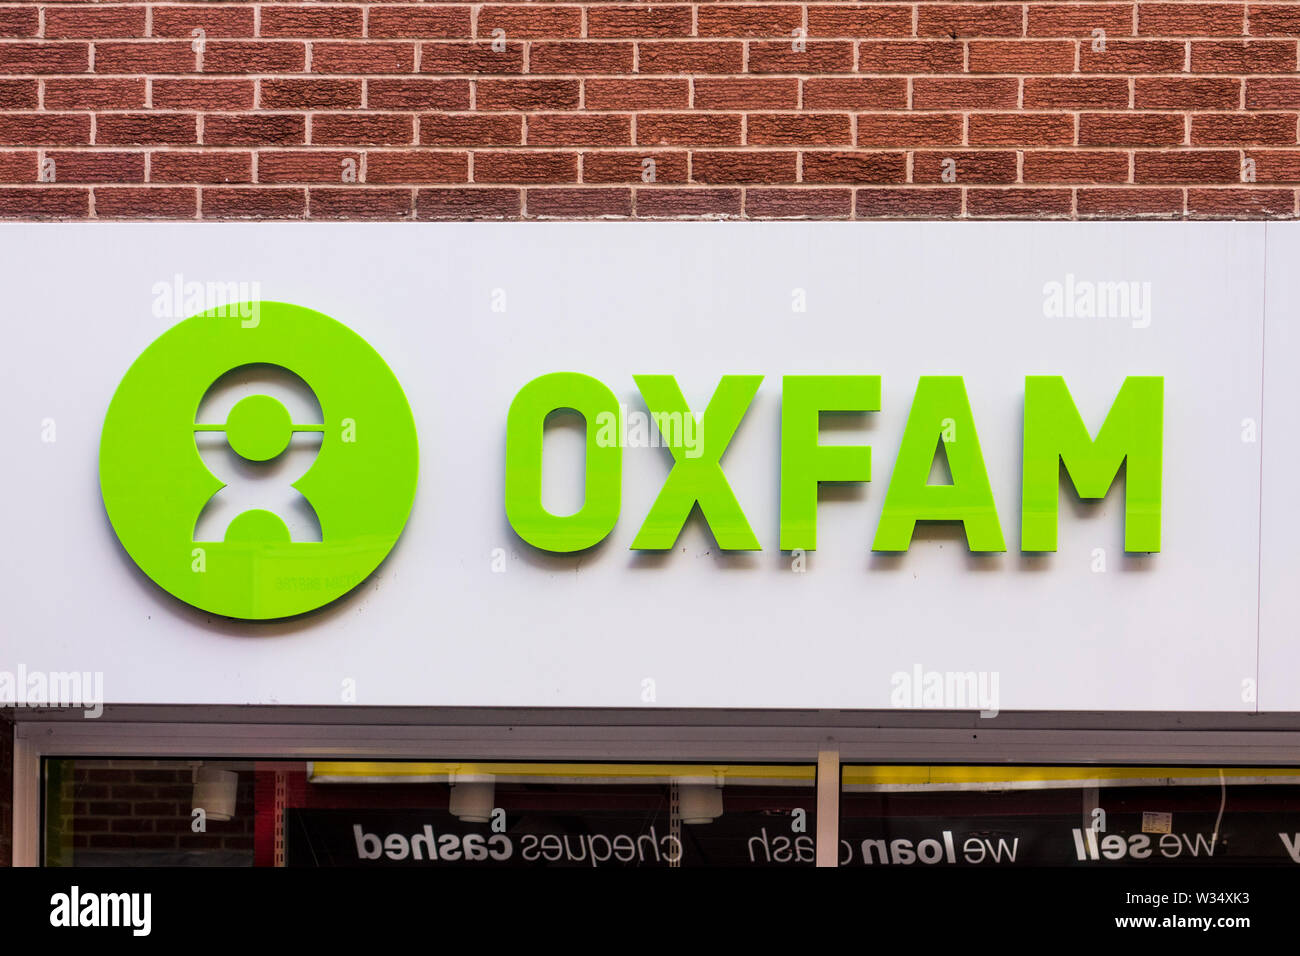 Oxfam sign, Stourbridge, West Midlands, UK Stock Photo